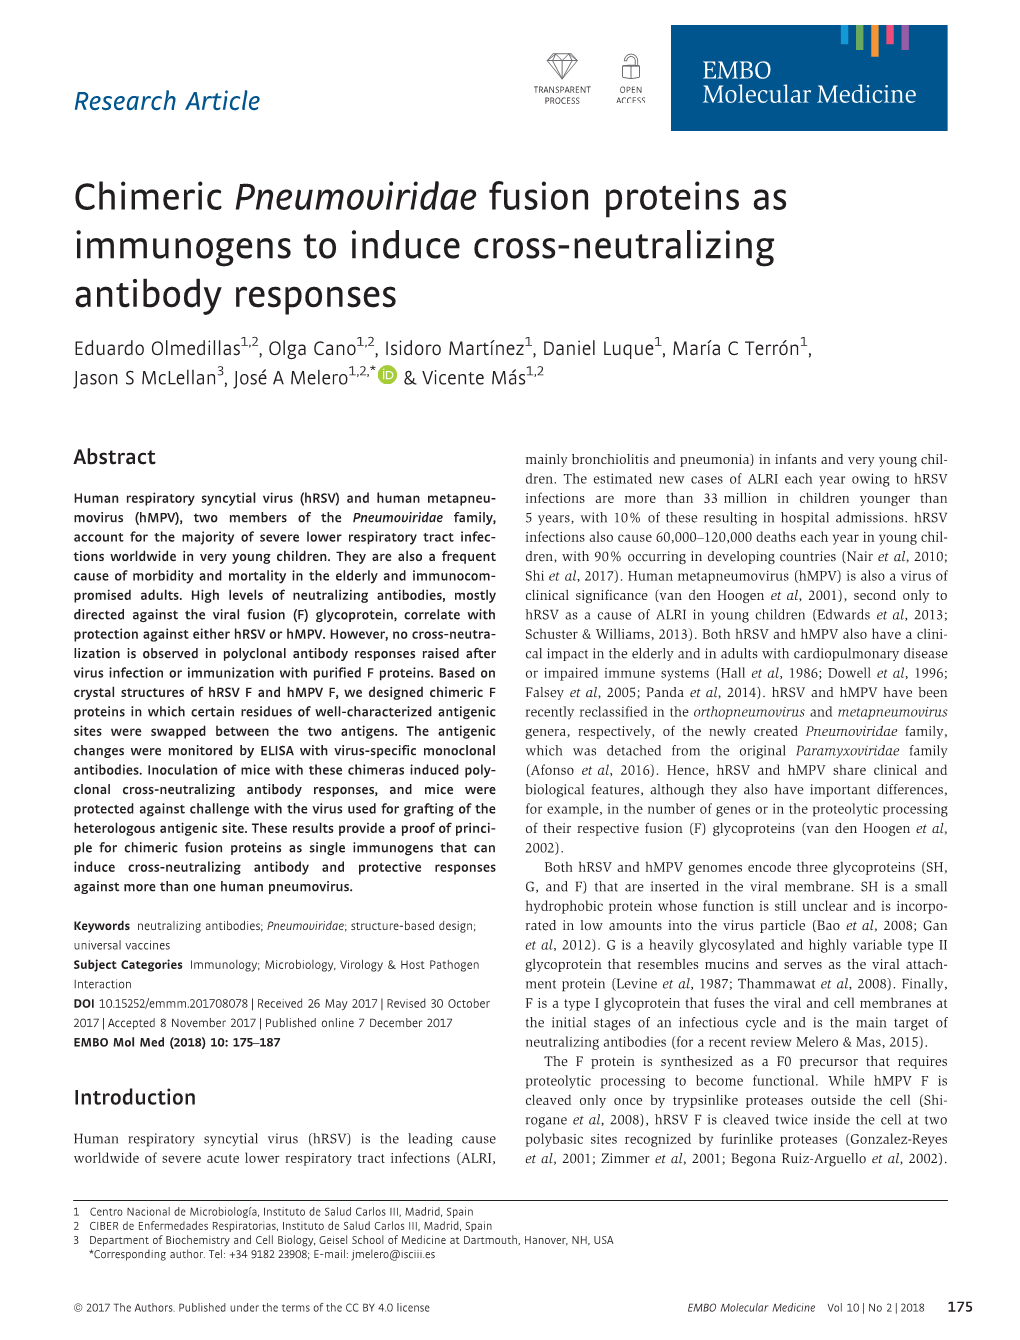 Chimeric Pneumoviridae Fusion Proteins As Immunogens to Induce Cross-Neutralizing Antibody Responses